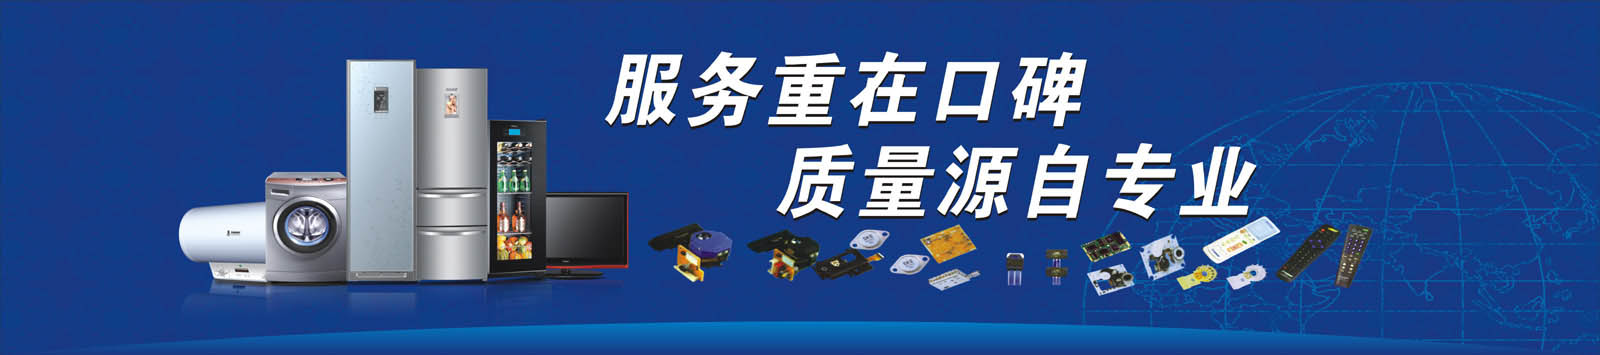 广州冰箱维修-质量源于专业